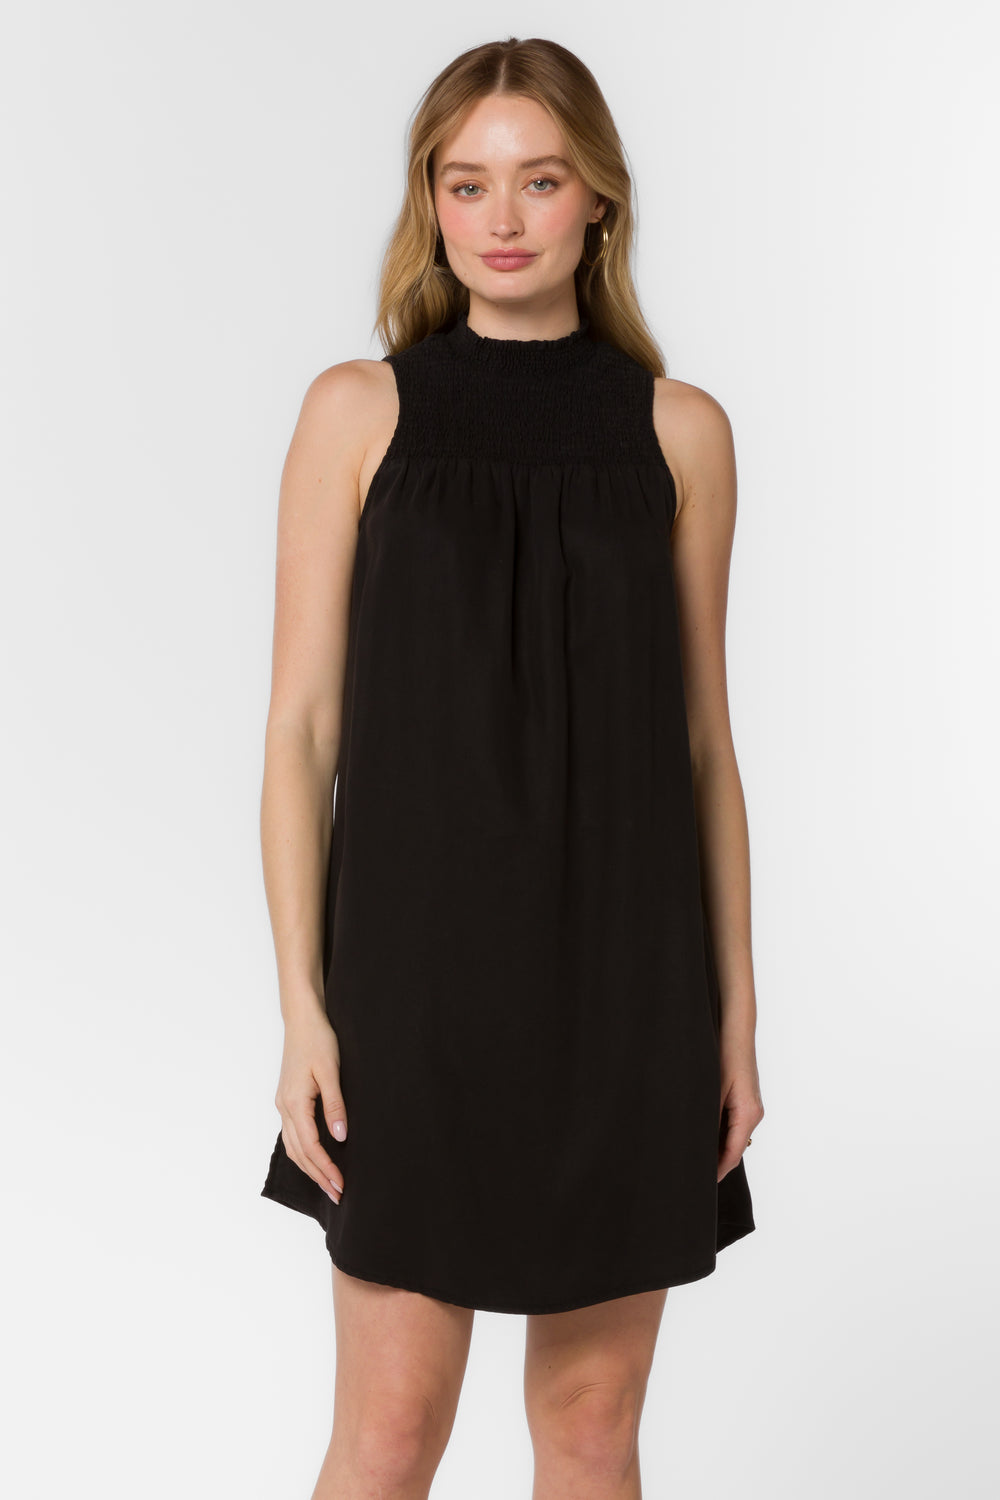 Nettie Black Dress - Dresses - Velvet Heart Clothing